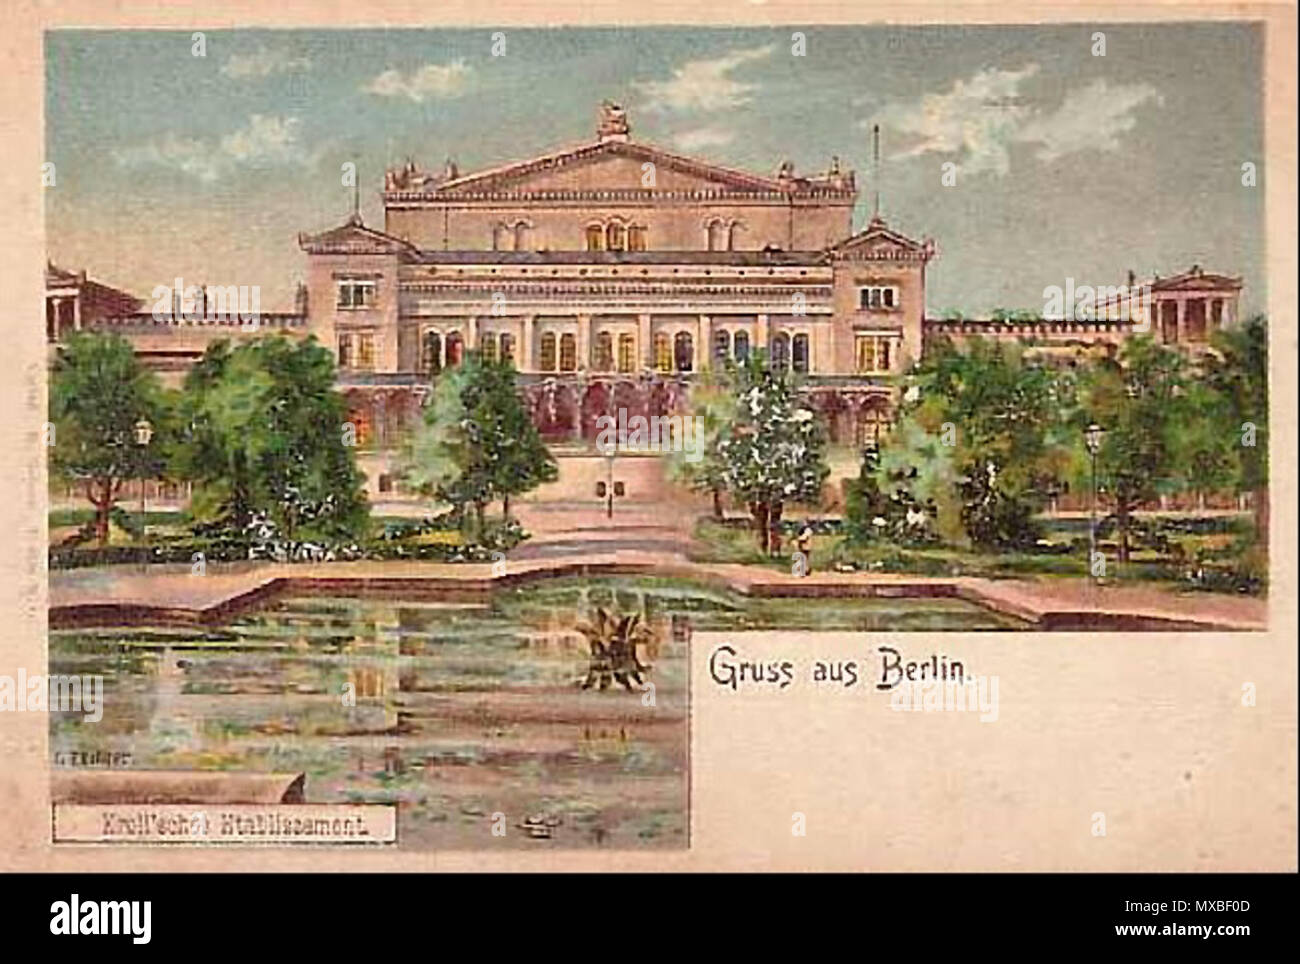 . Postkarte mit Bild des so genannten "Krolloper', einem historischen Vergnügungspark - Center und Theater in Berlin. ca. 1890. Unterzeichnet L. Zither 349 Krolloper um 1890 Stockfoto